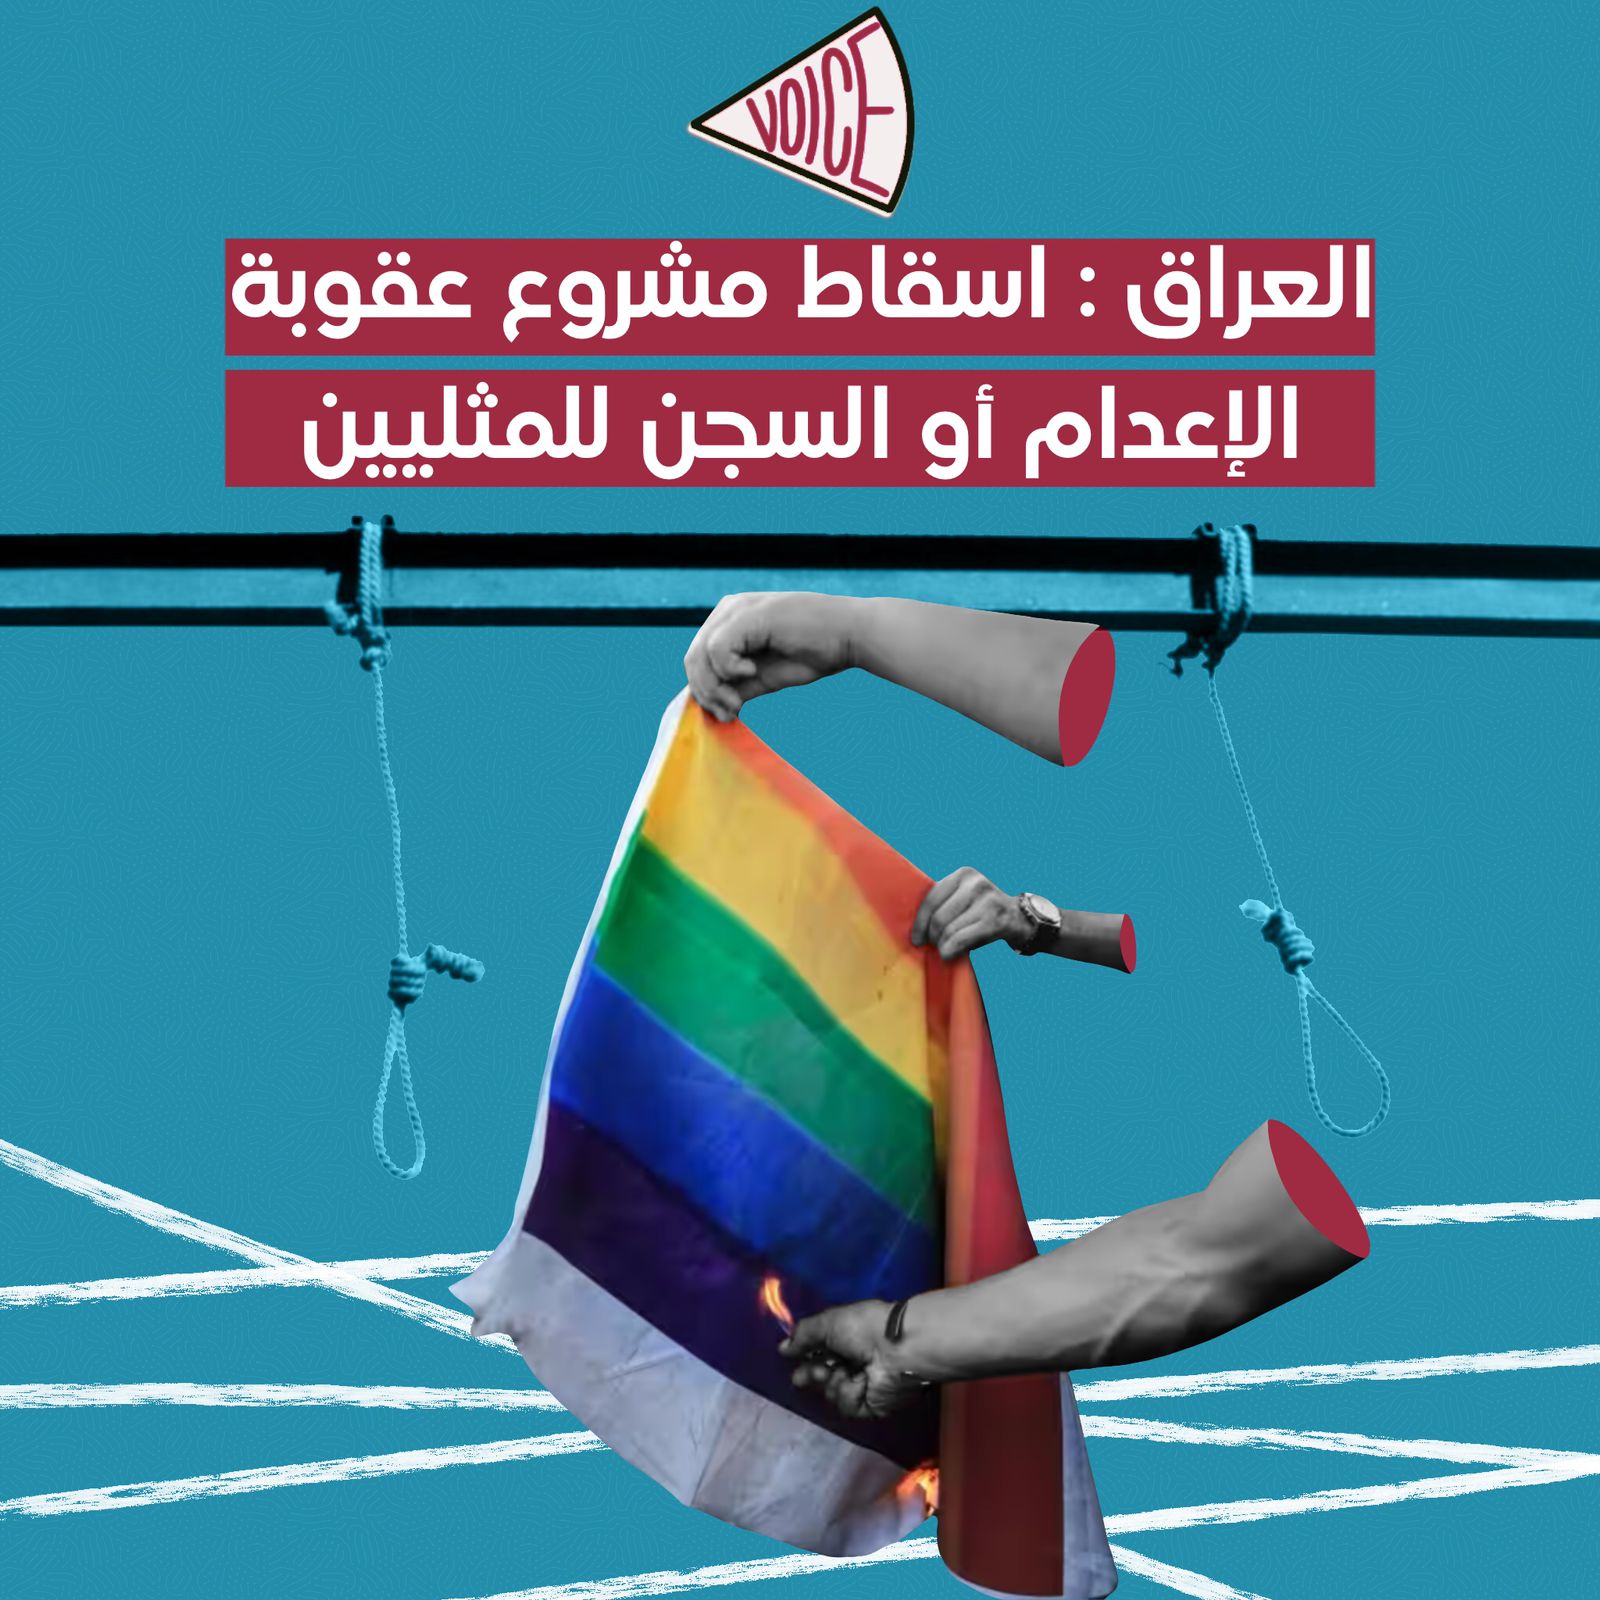 العراق: اسقاط مشروع عقوبة الإعدام أو السجن للمثليين